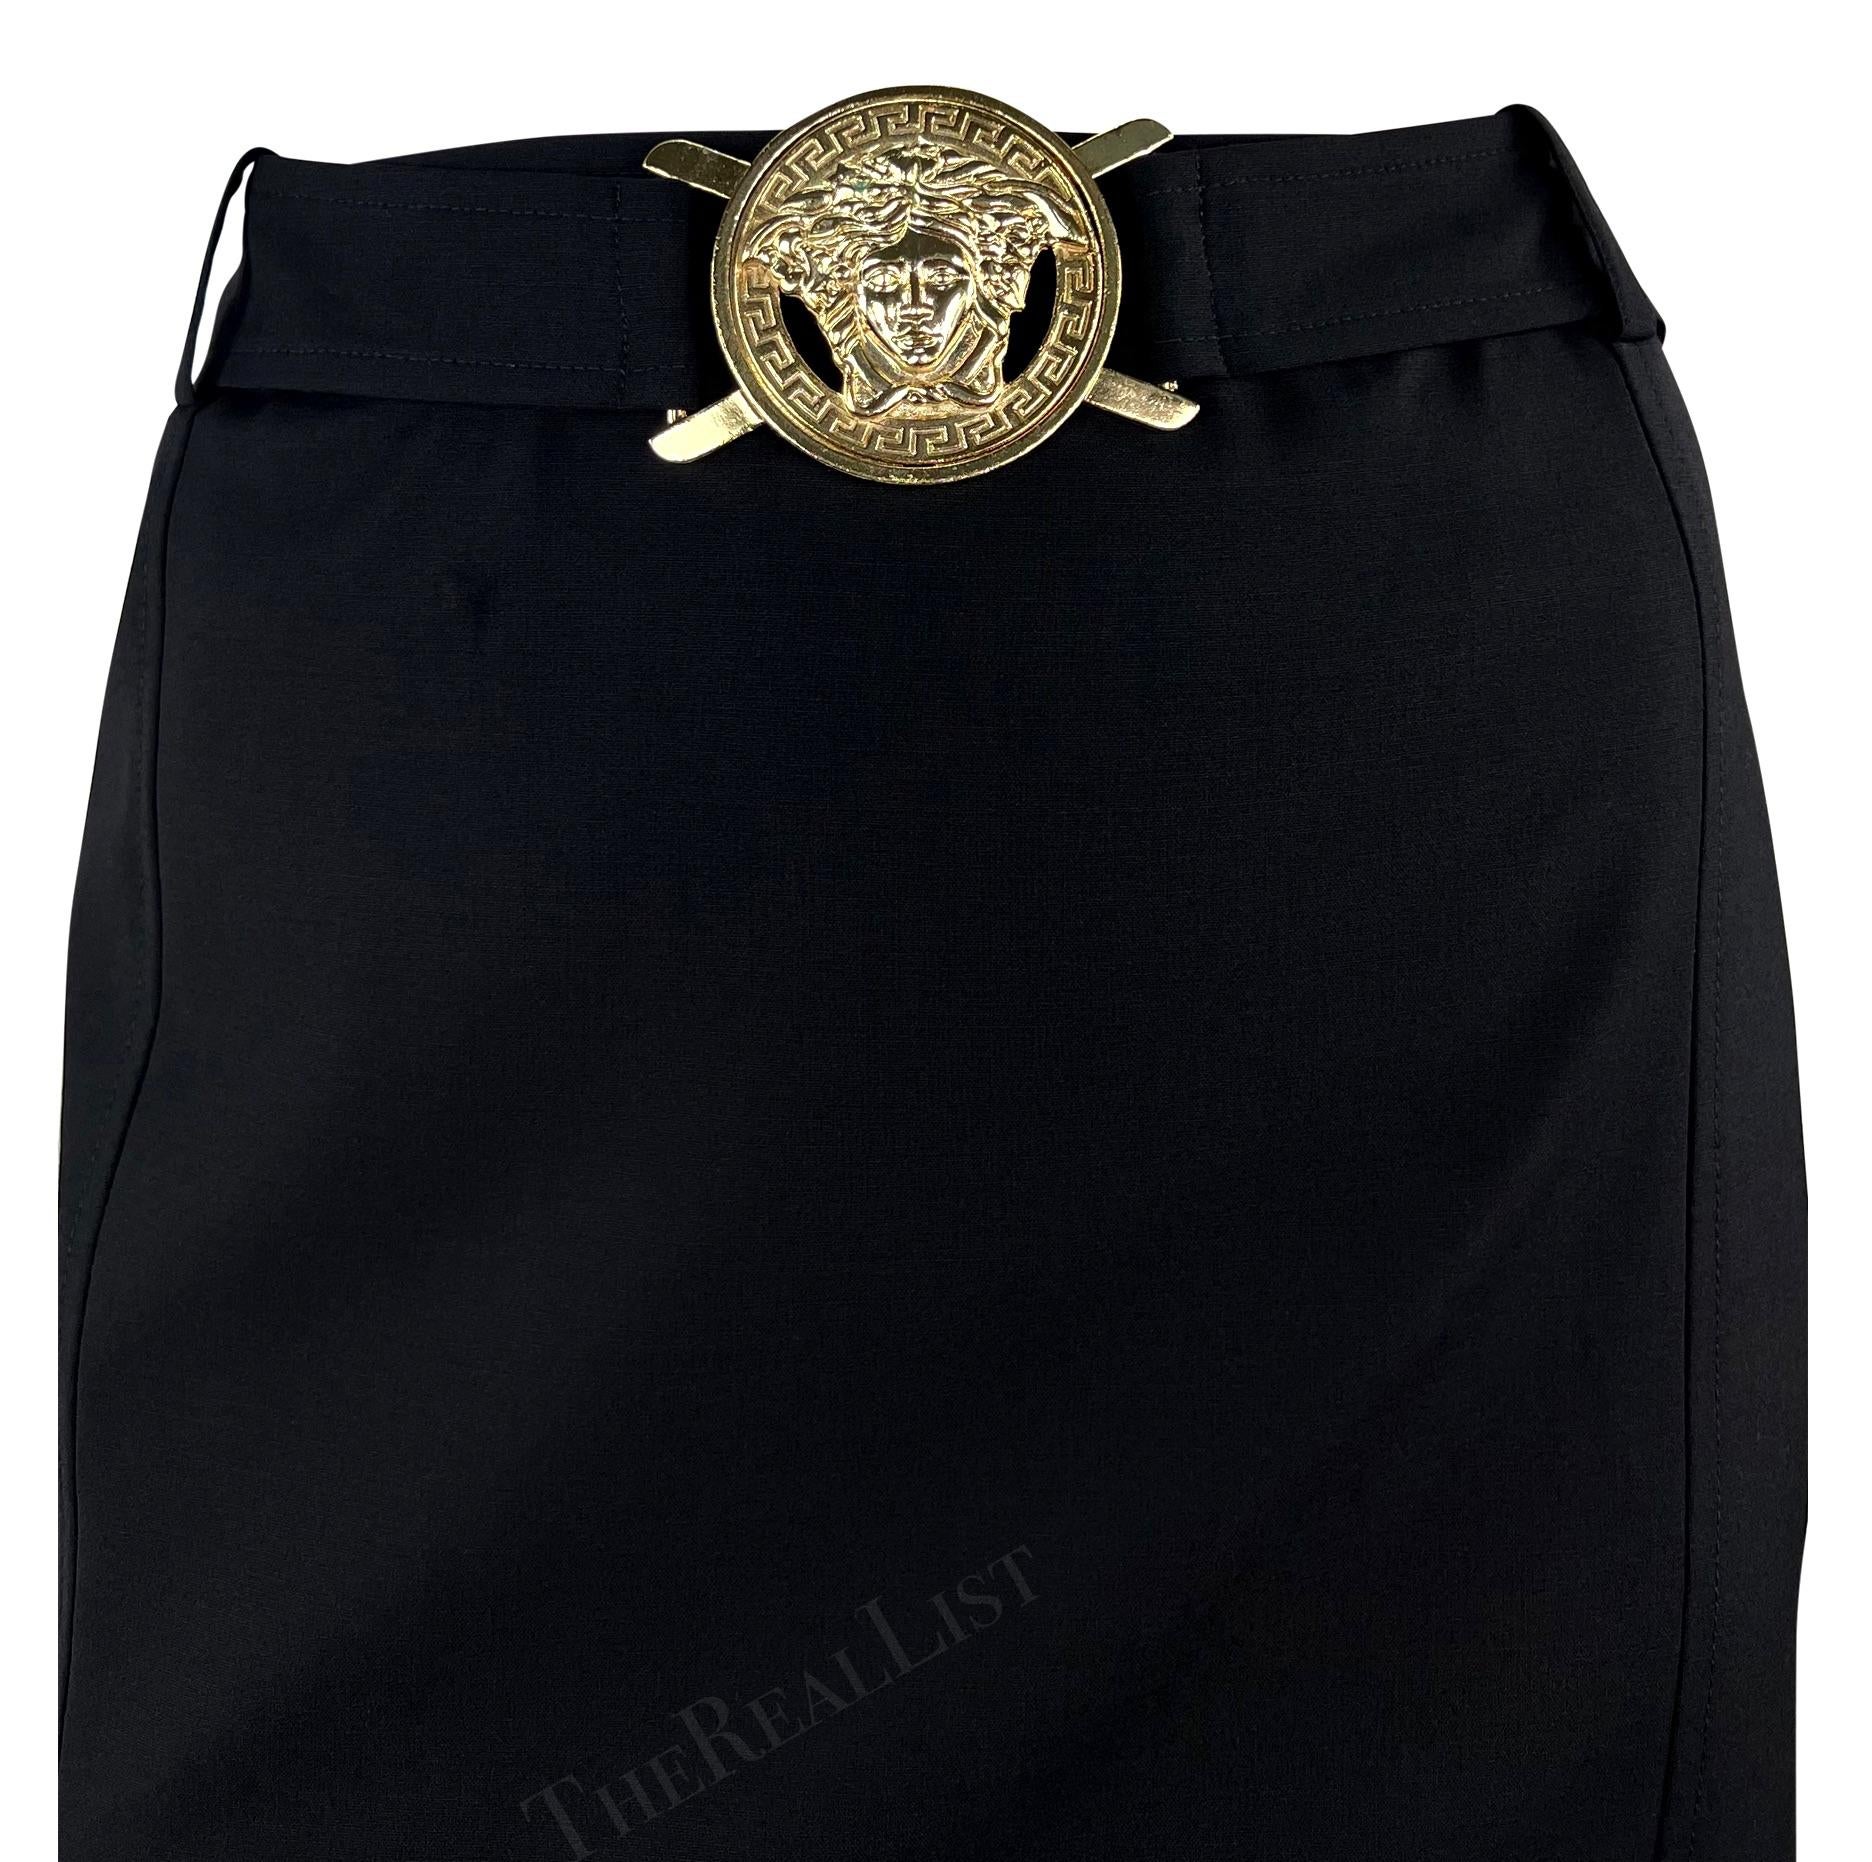 Wir präsentieren einen schicken schwarzen Rock mit hoher Taille von Versace, entworfen von Donatella Versace aus der Kollektion Frühjahr/Sommer 2005. Dieser knielange Rock hat einen eingenähten Taillengürtel mit einer auffälligen Medusa-Schnalle von